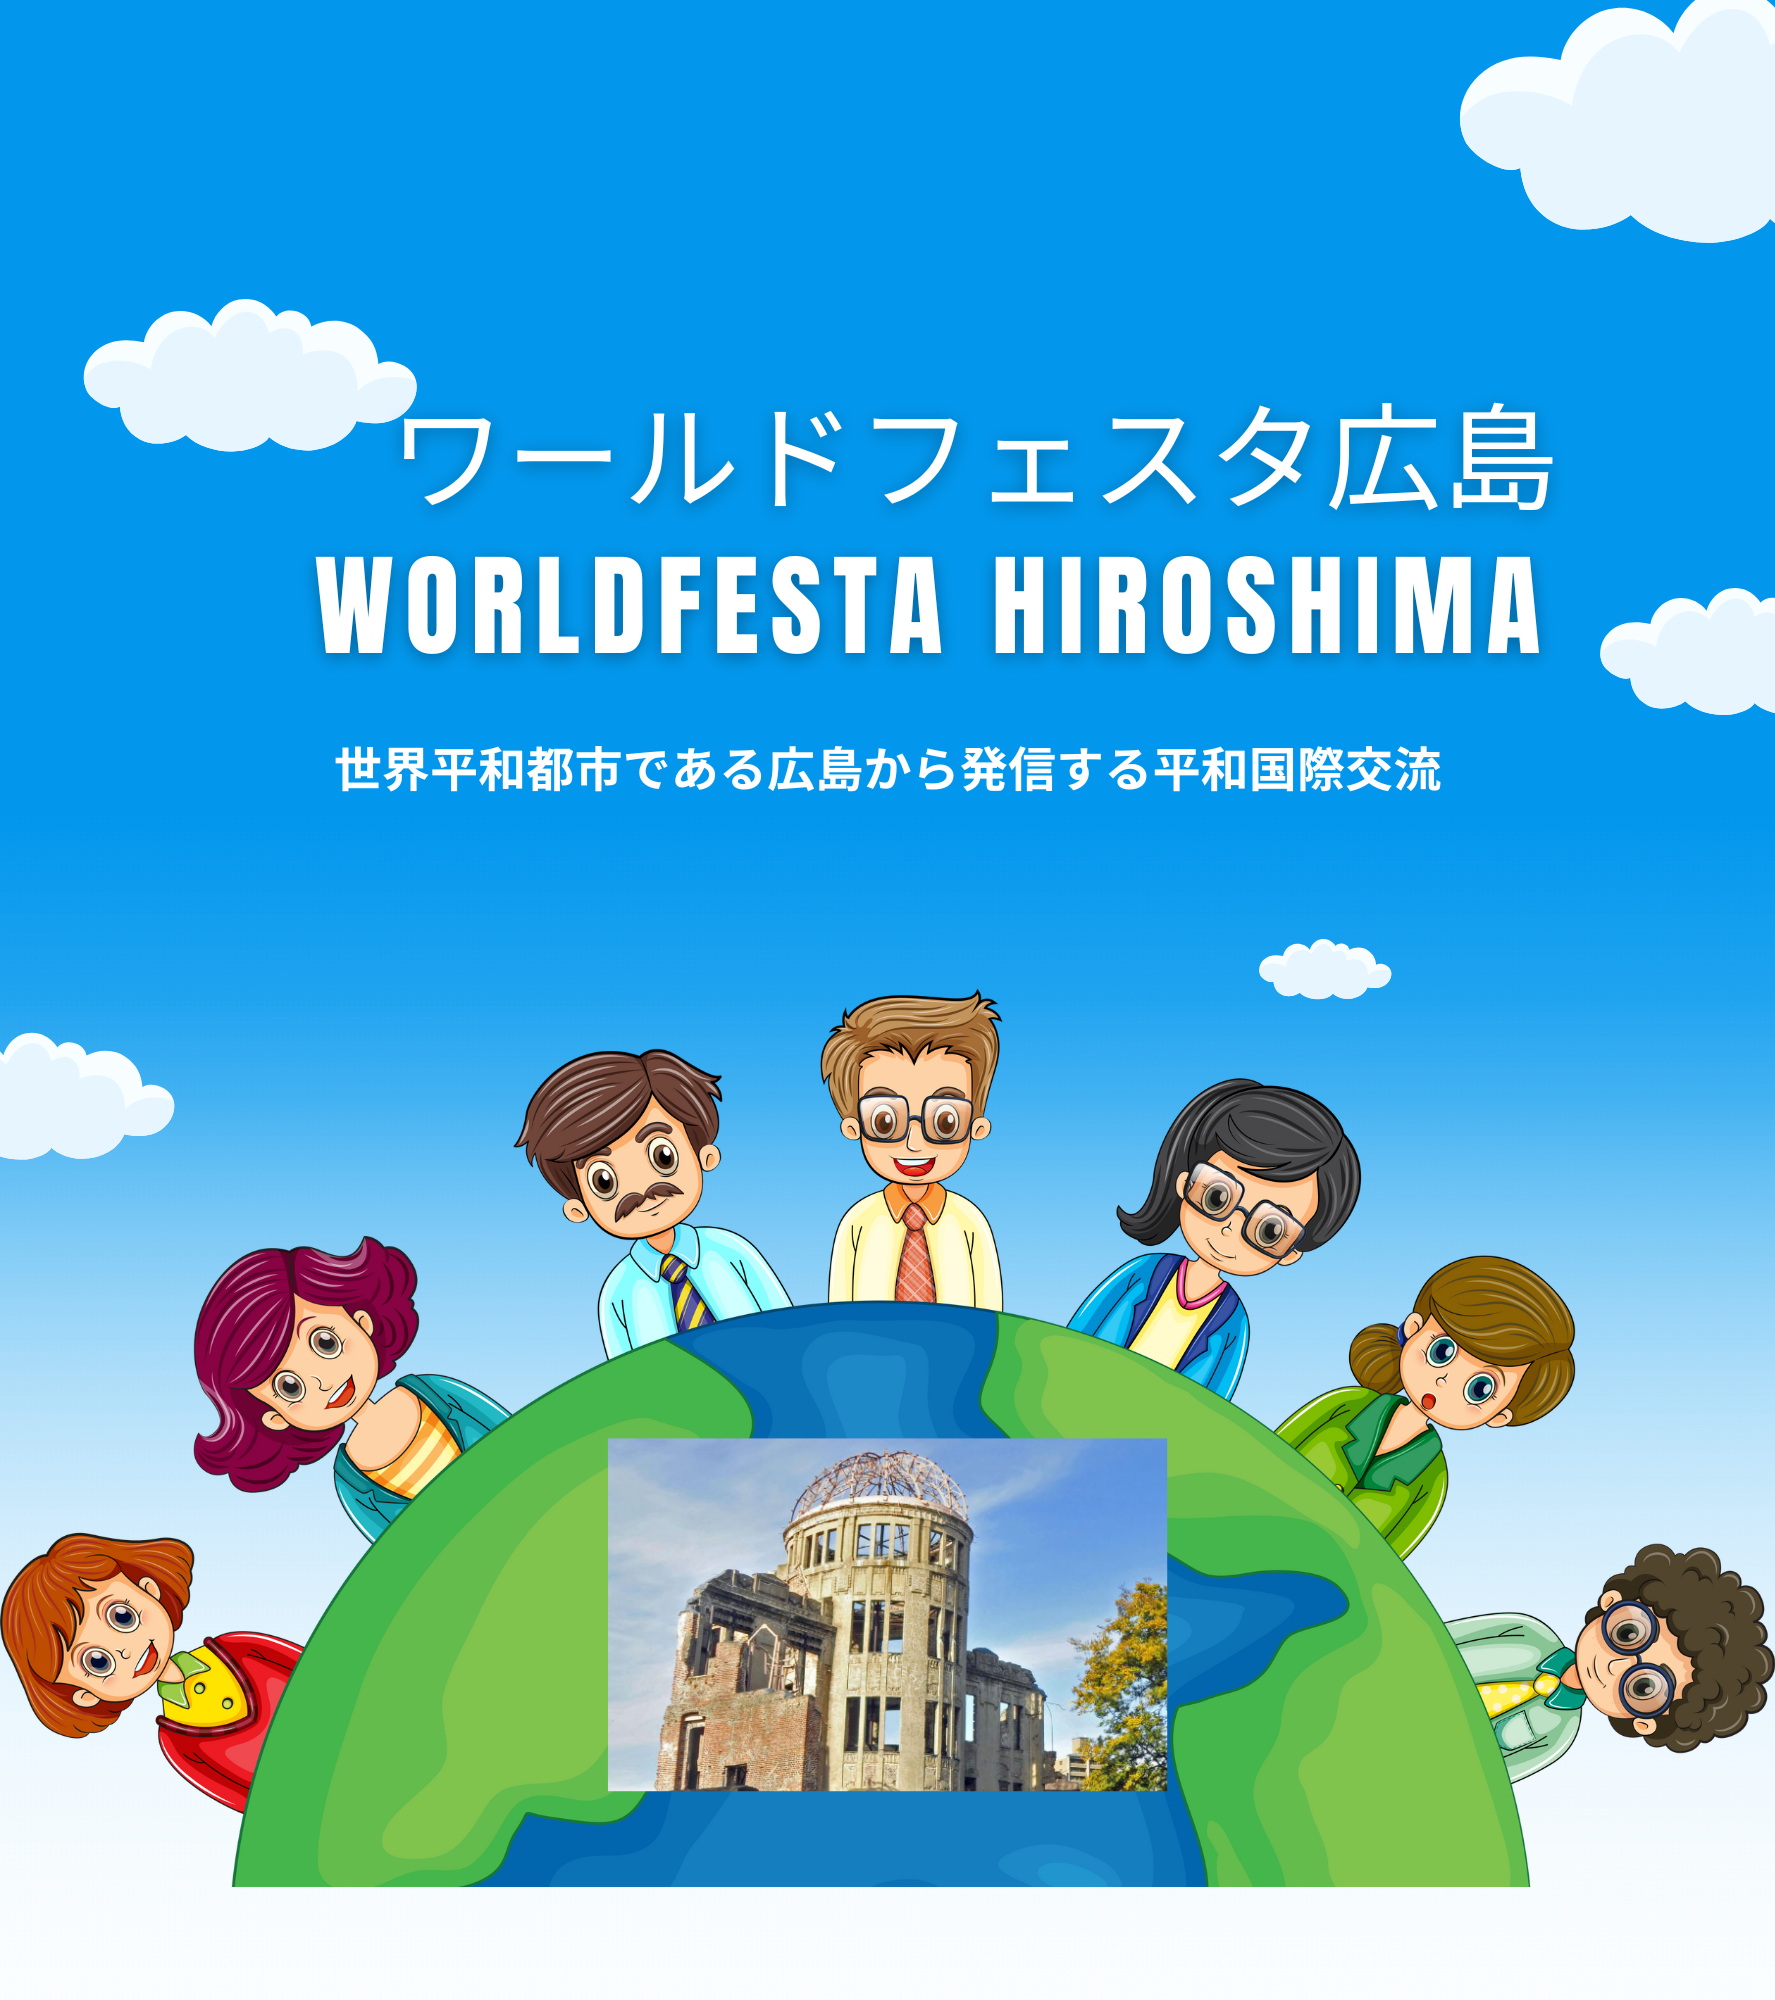 ワールドフェスタ広島・世界平和都市である広島から発信する平和国際交流